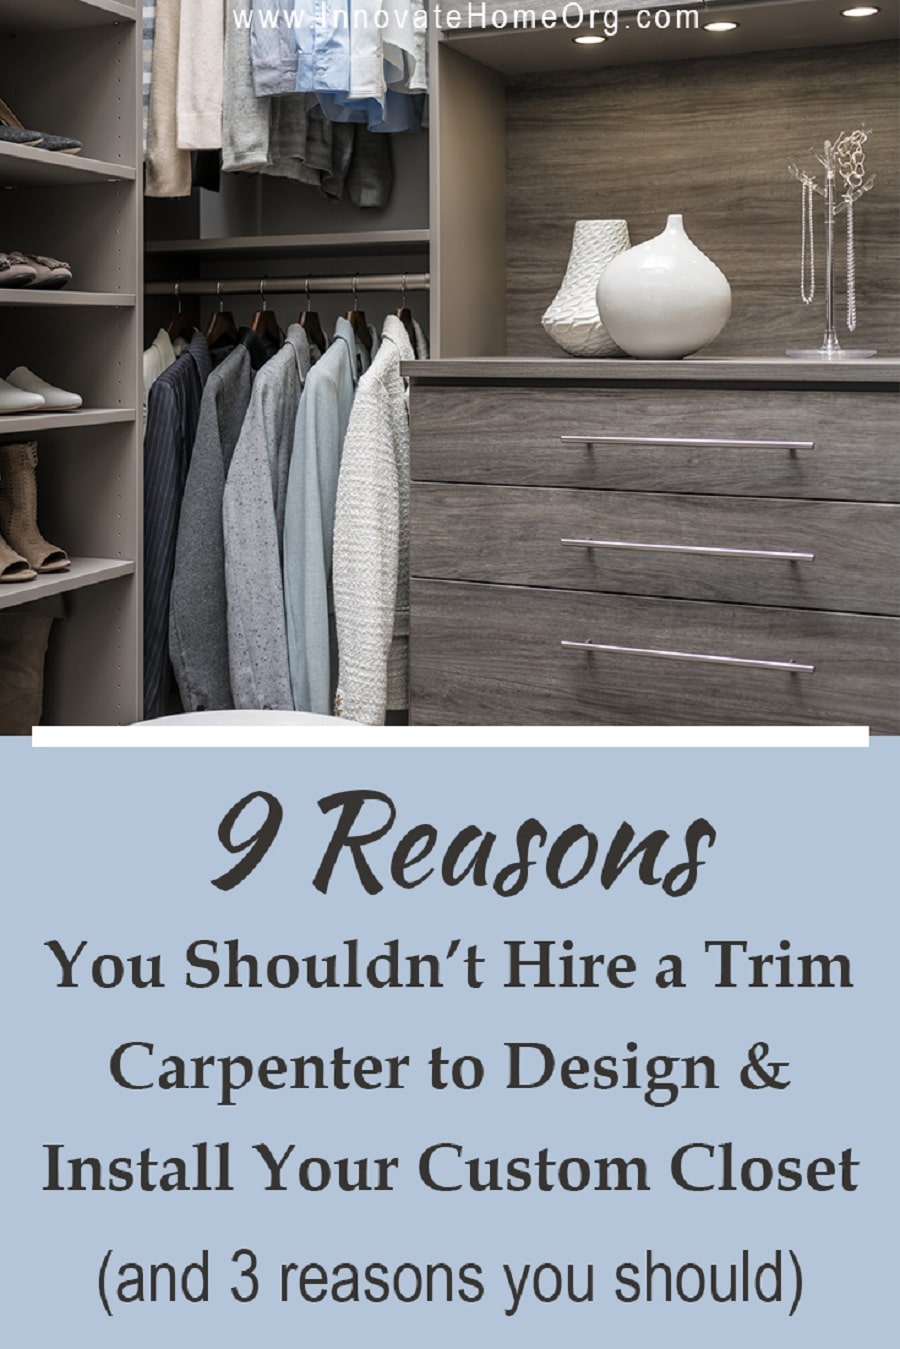 Design idea 1 - 9 Reasons You Shouldn't Hire a Trim Carpenter Do Custom Closet | Innovate Home Org | Powell, OH #ClosetRemodel #Remodel #CustomCloset